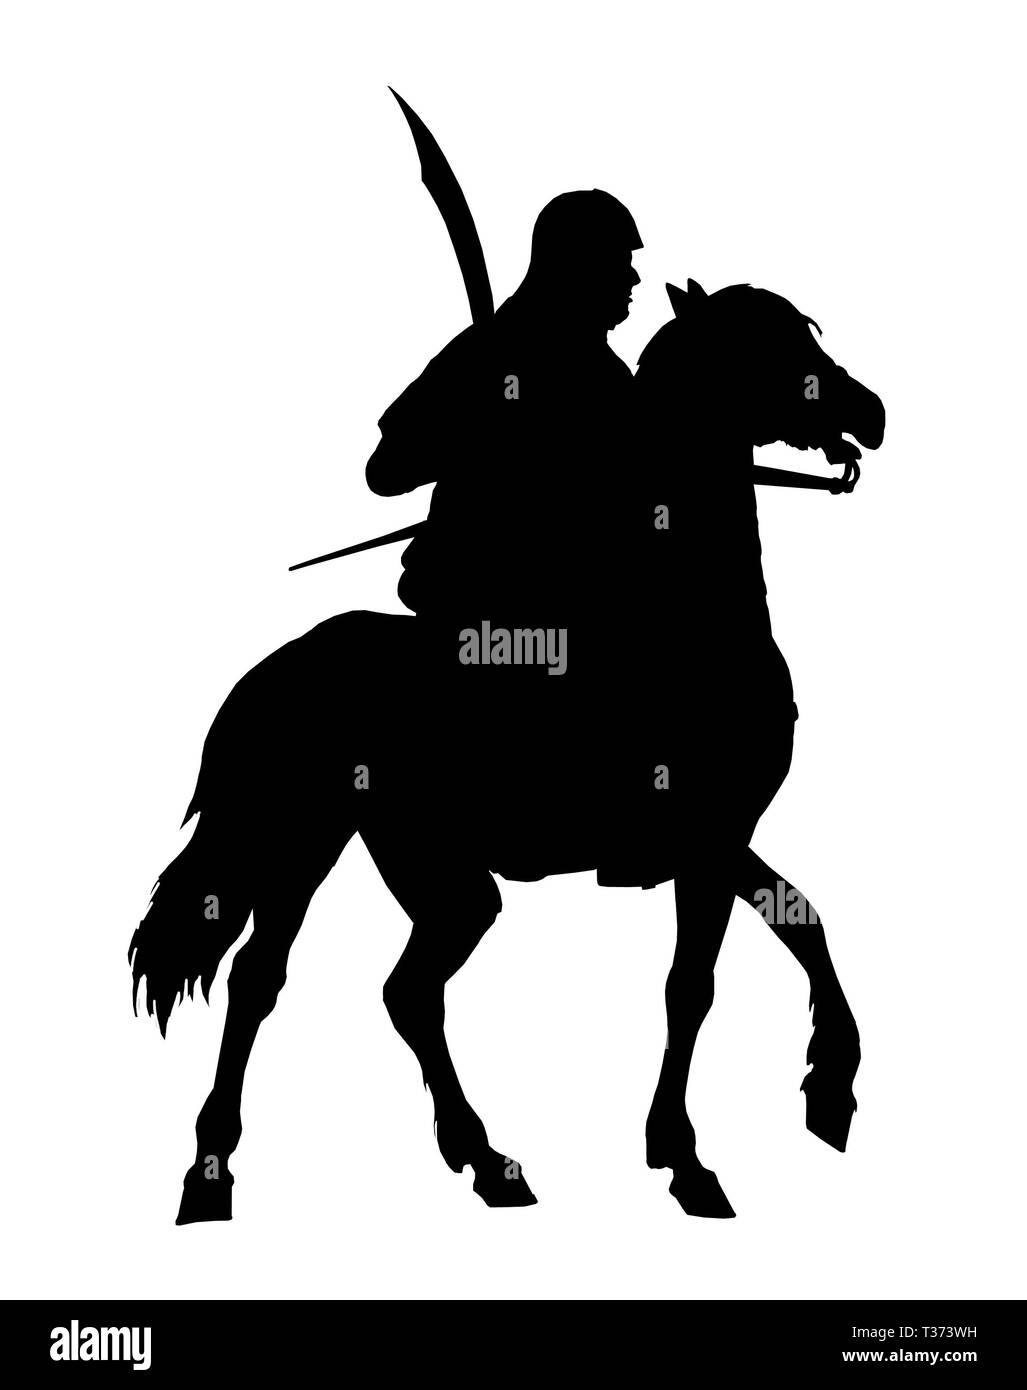 Germanische Ritter silhouette montiert. Teutonic knight Abbildung. Crusader auf dem Pferd. Stockfoto